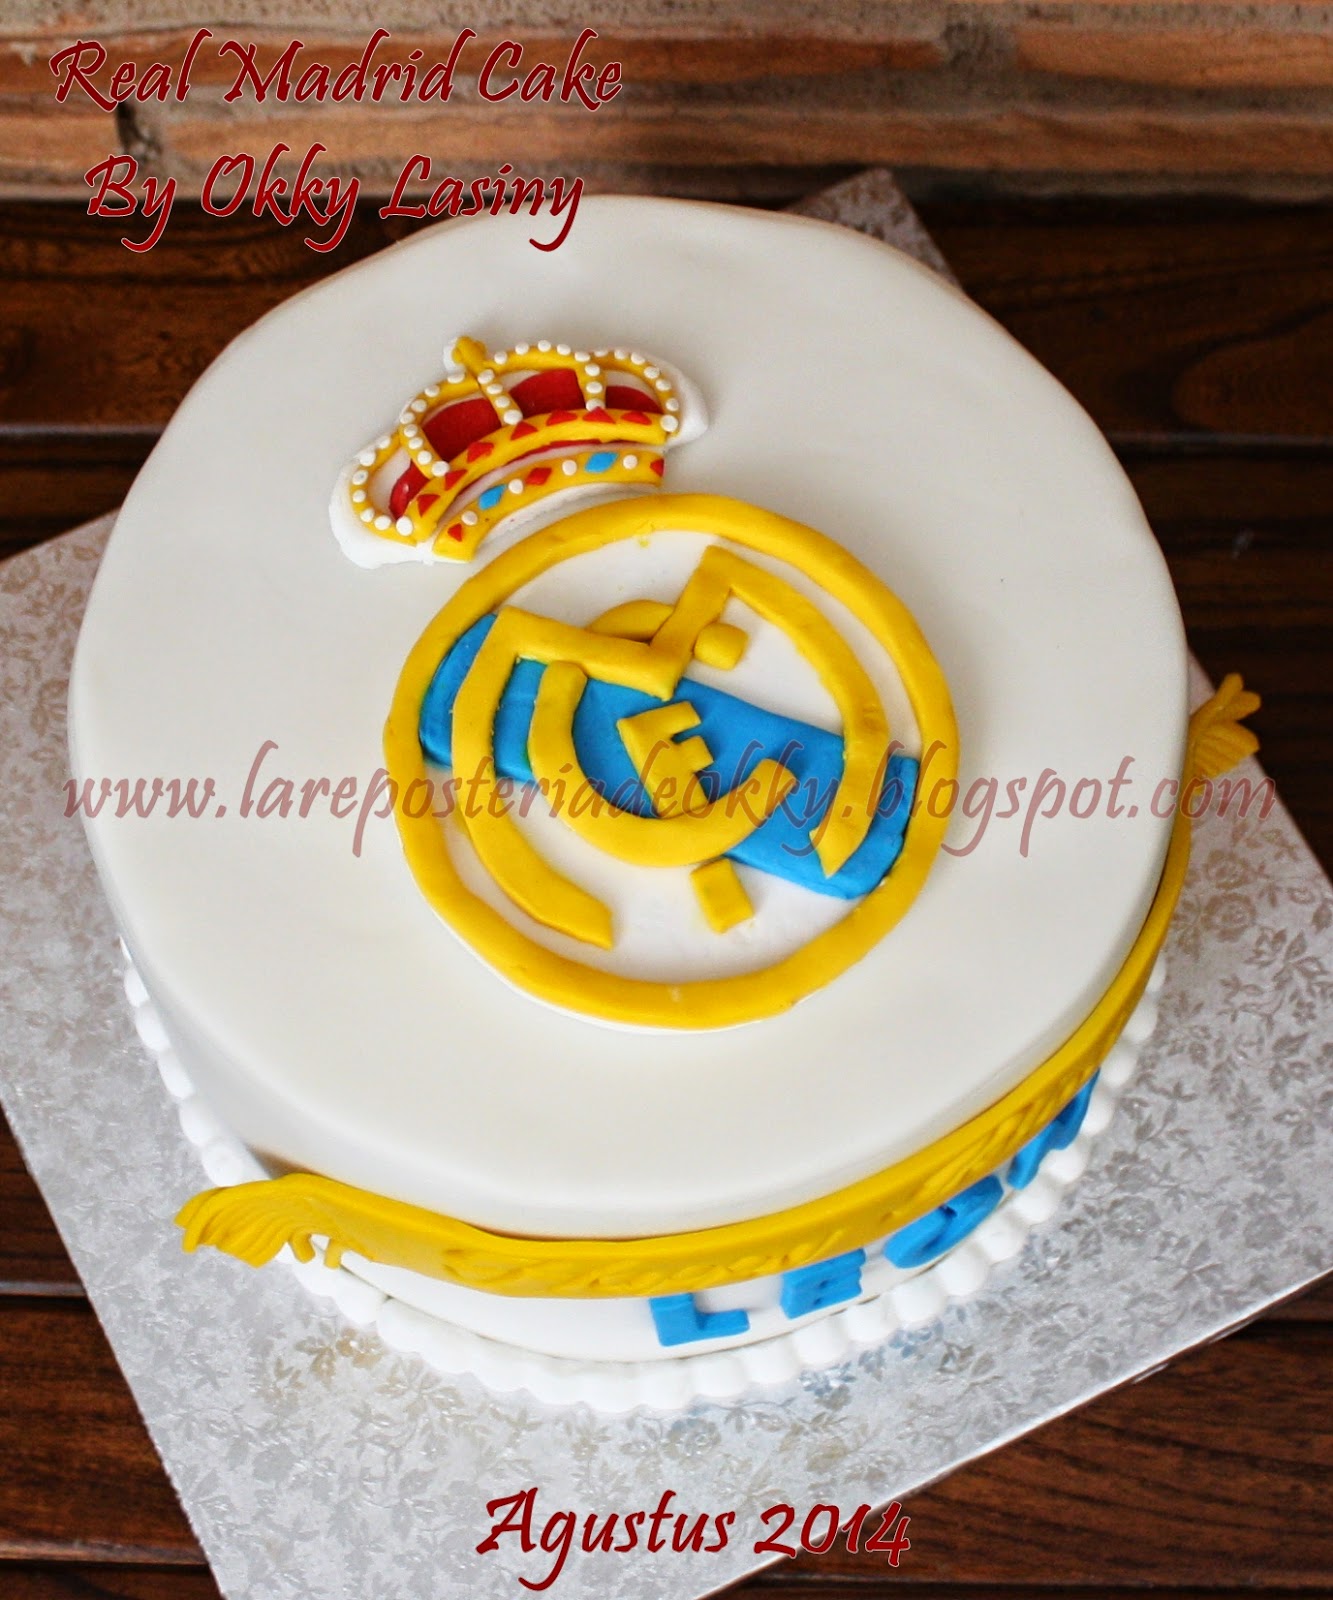 La Reposteria De Okky Real Madrid Cake For Leon